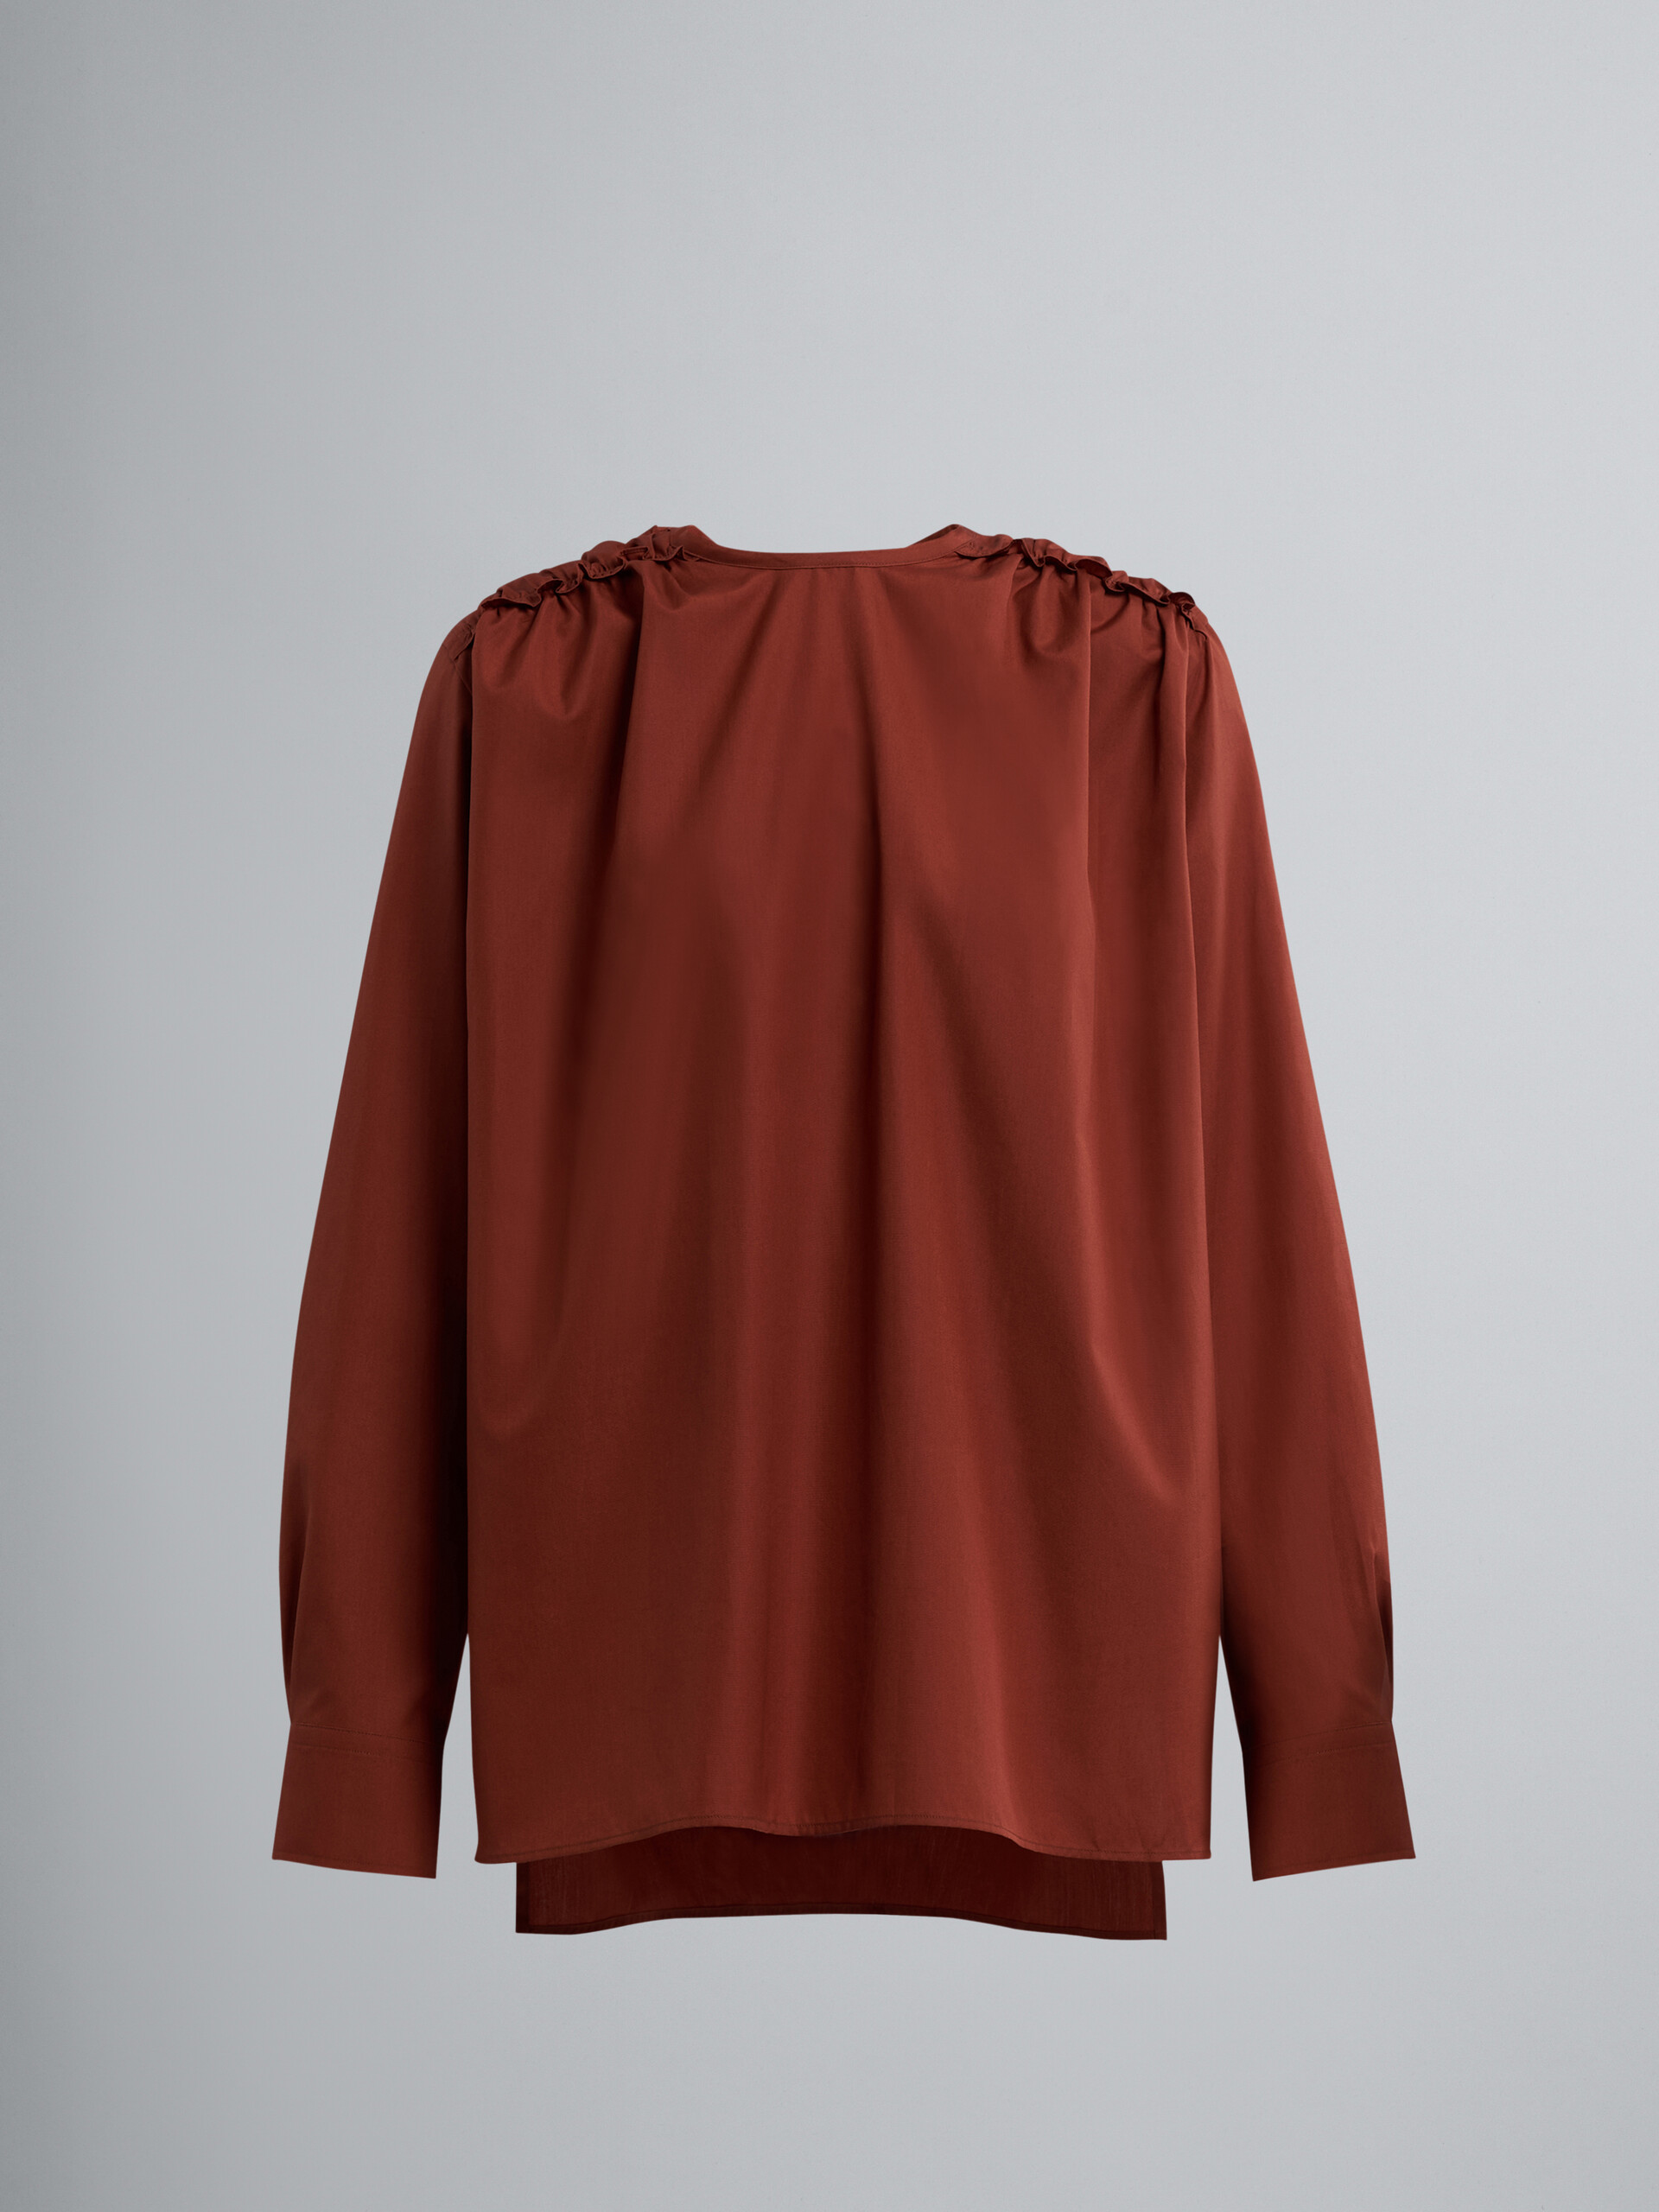 Camisa de popelina de algodón marrón - Camisas - Image 1